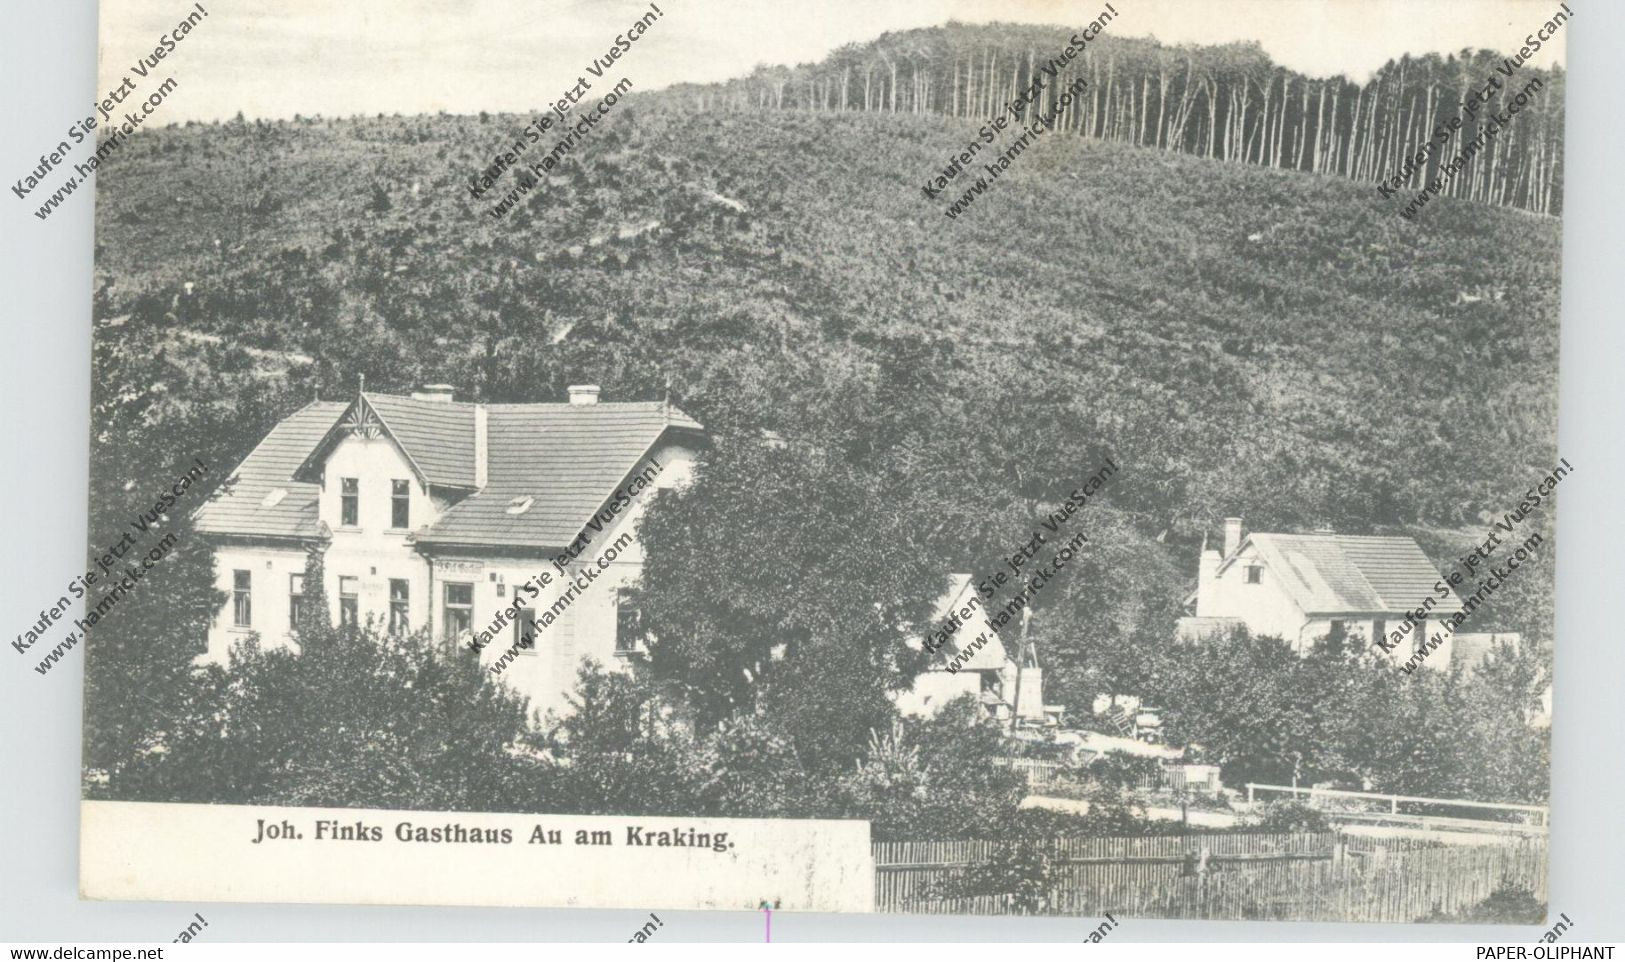 A 3021 PRESSBAUM - AU AM KRAKING, Joh. Finks Gasthaus, 1907 - St. Pölten